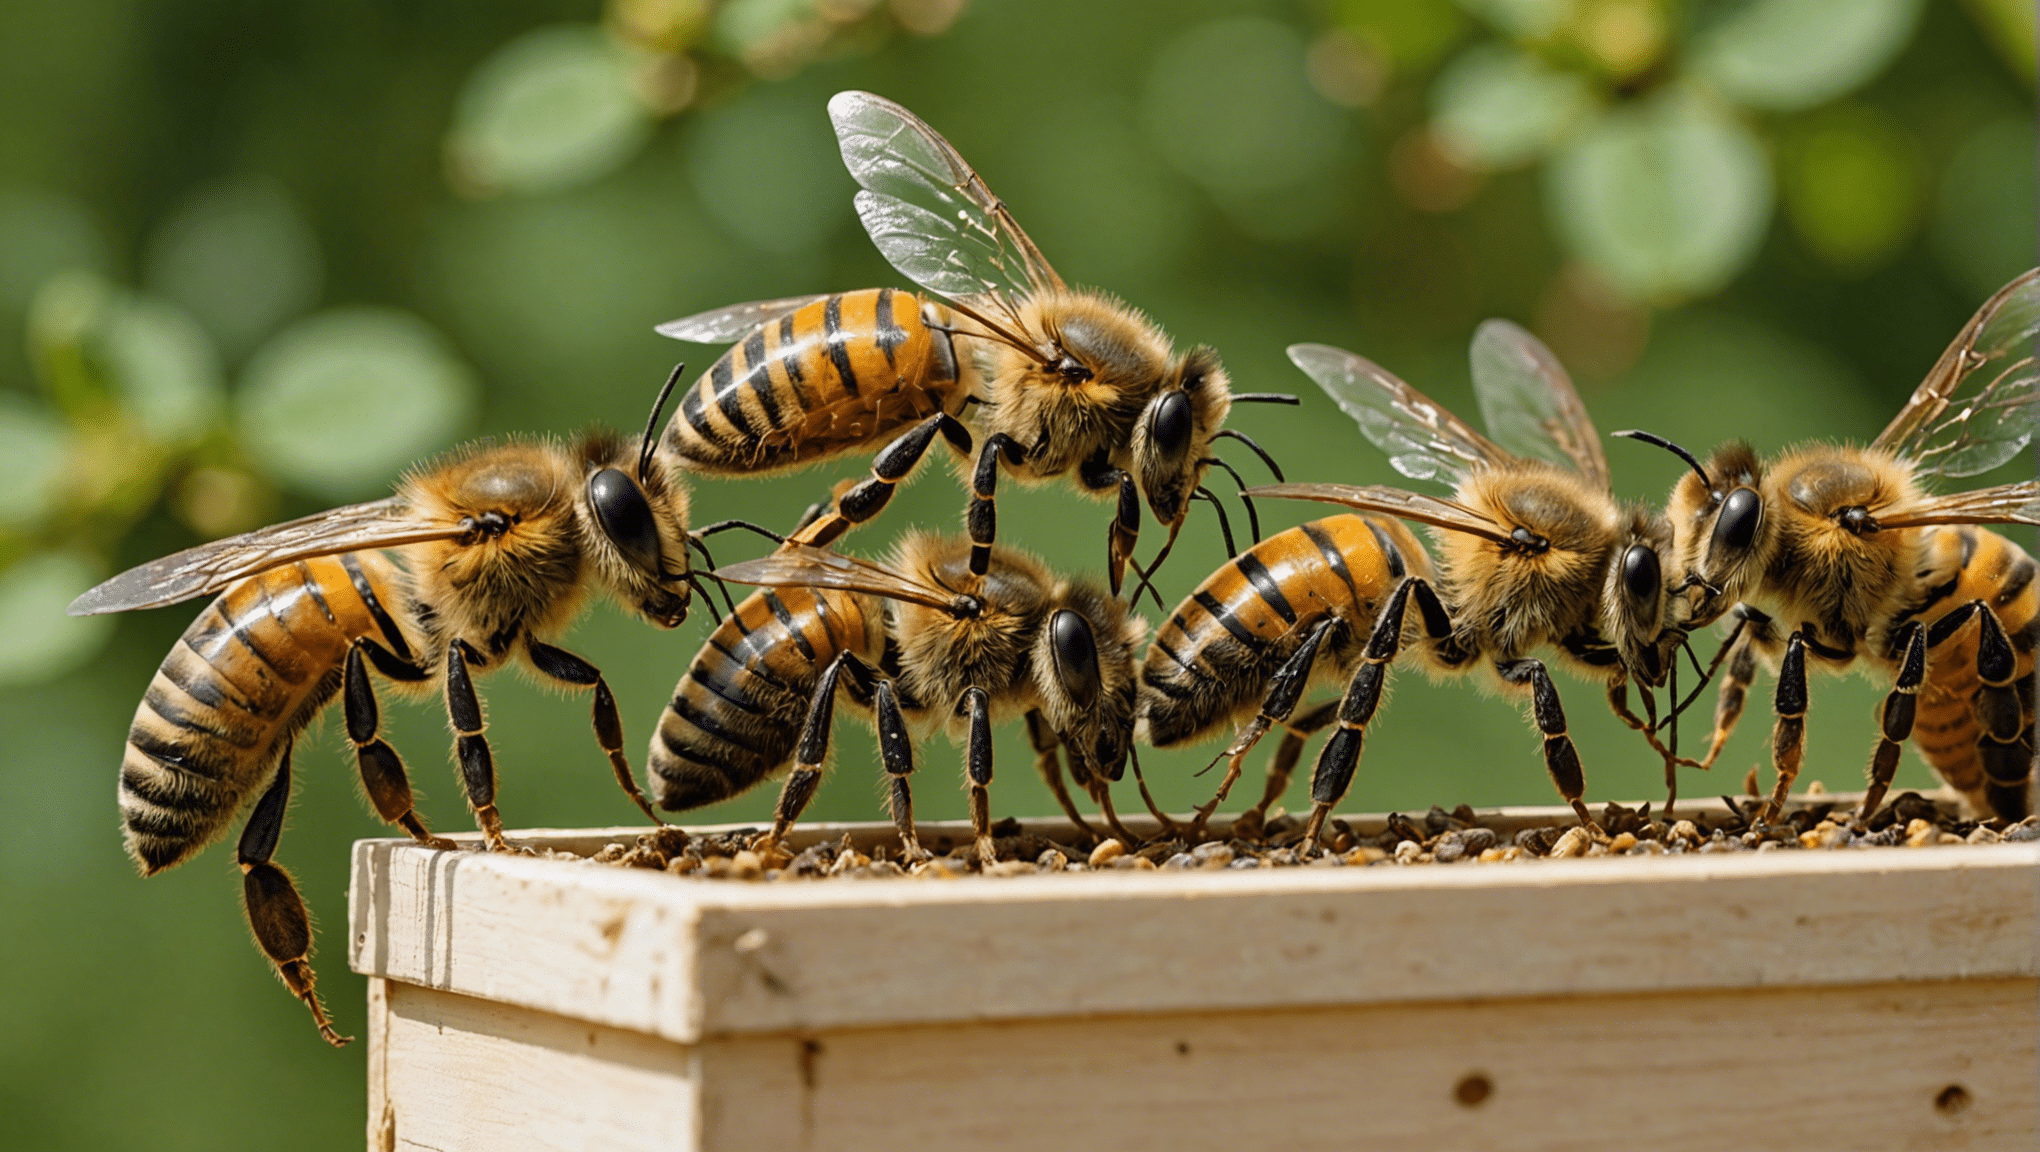 scopri come superare le attuali sfide dell'apicoltura con i nostri consigli pratici e innovativi.